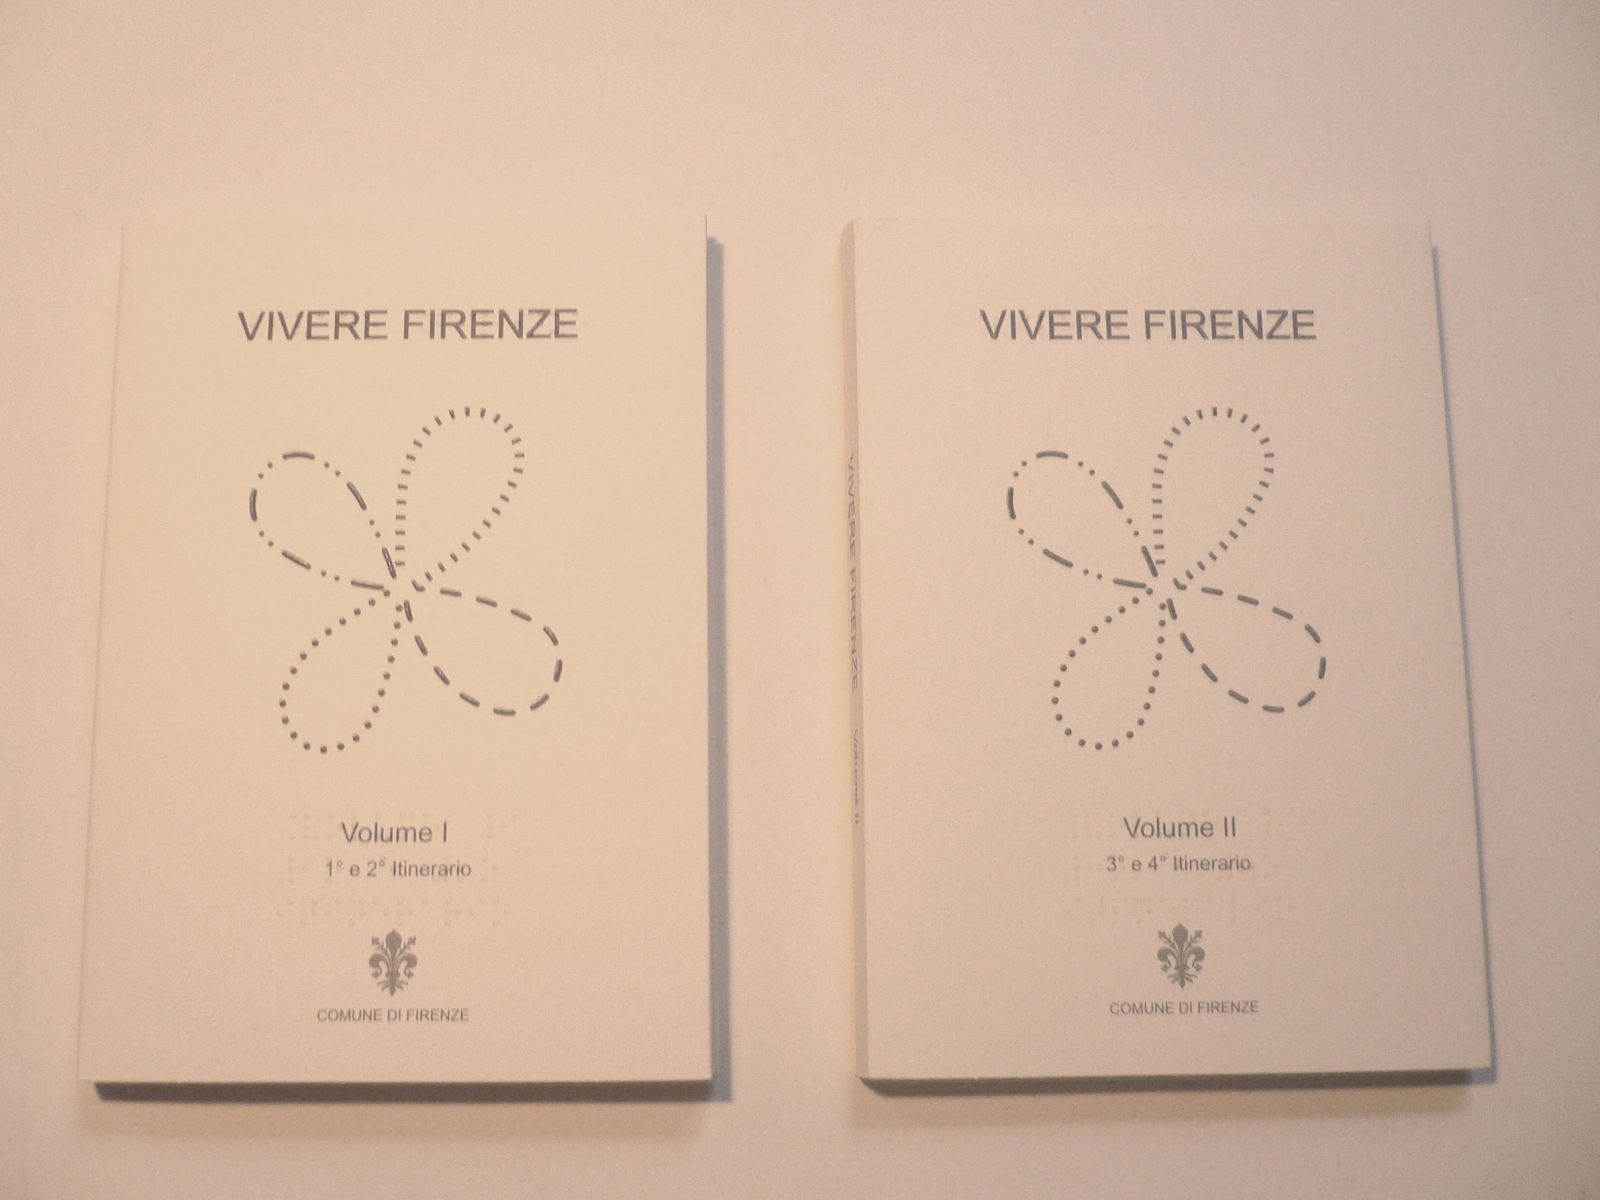 Copertina libro tattile "Vivere Firenze"